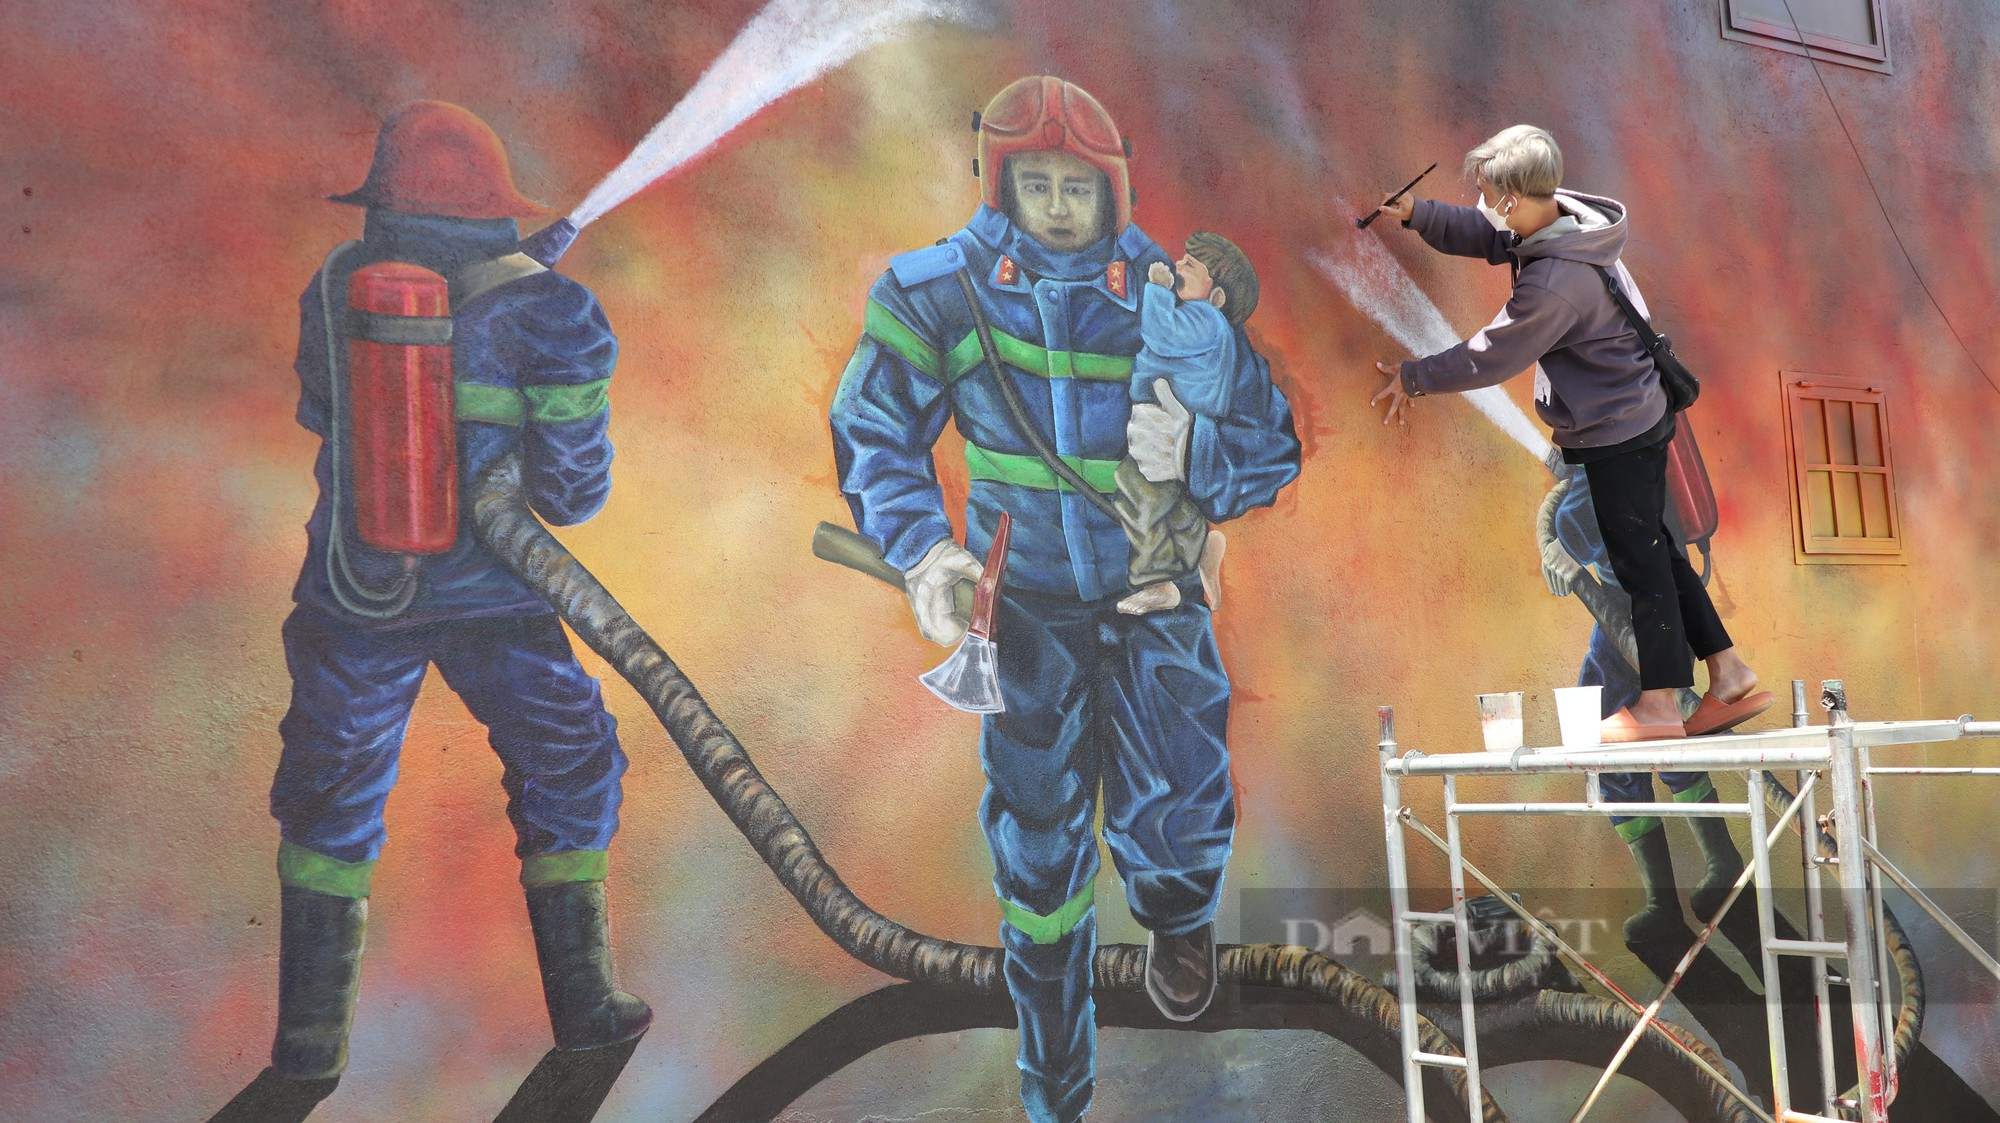 Đà Lạt: Họa sĩ vẽ bức tranh tri ân 3 người lính cứu hỏa hy sinh, người dân xúc động - Ảnh 2.